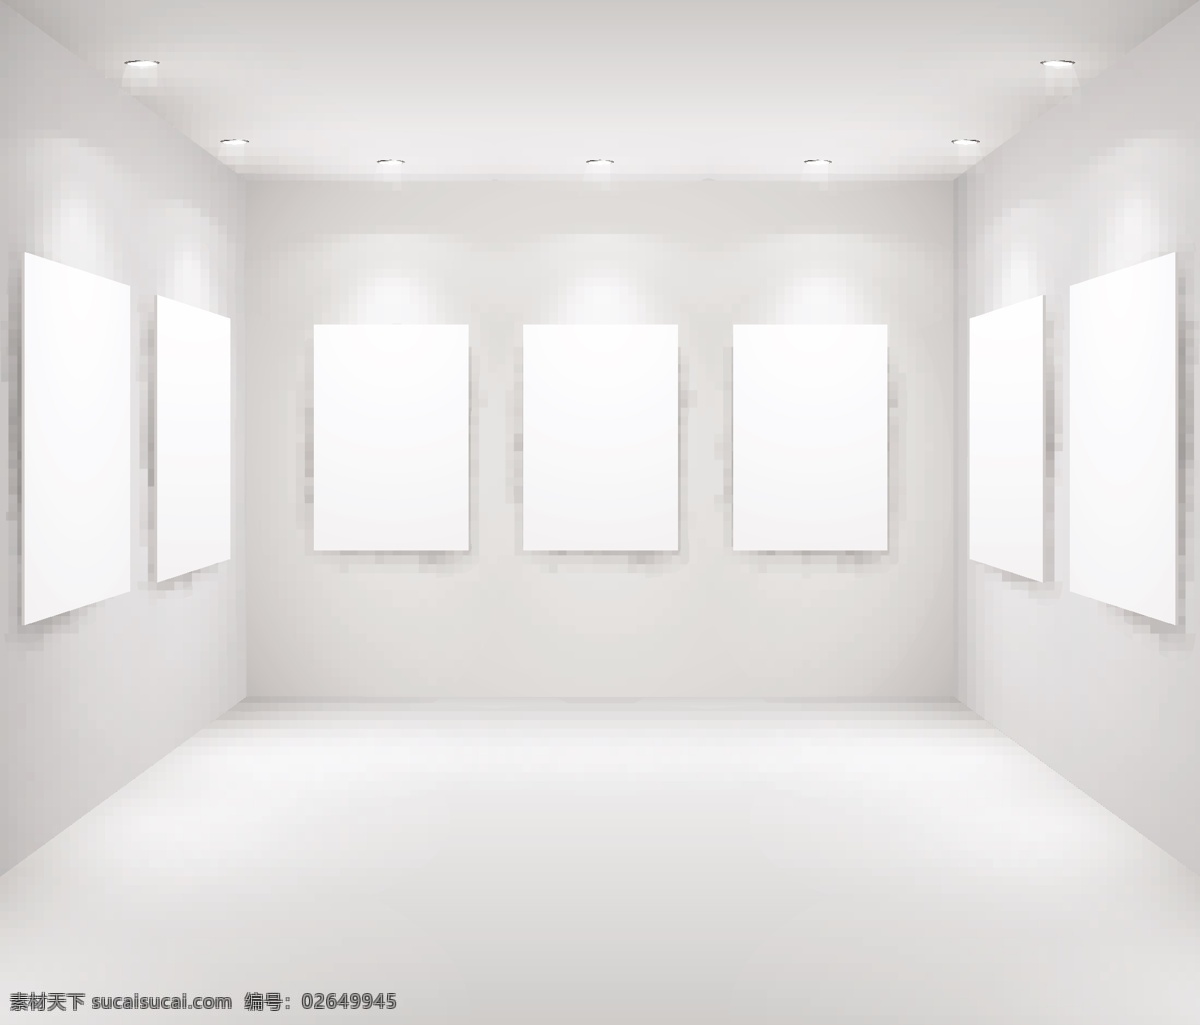 展示 画廊 模板 矢量 聚光灯 空白 空间 室内 展览 陈列室 矢量图 日常生活